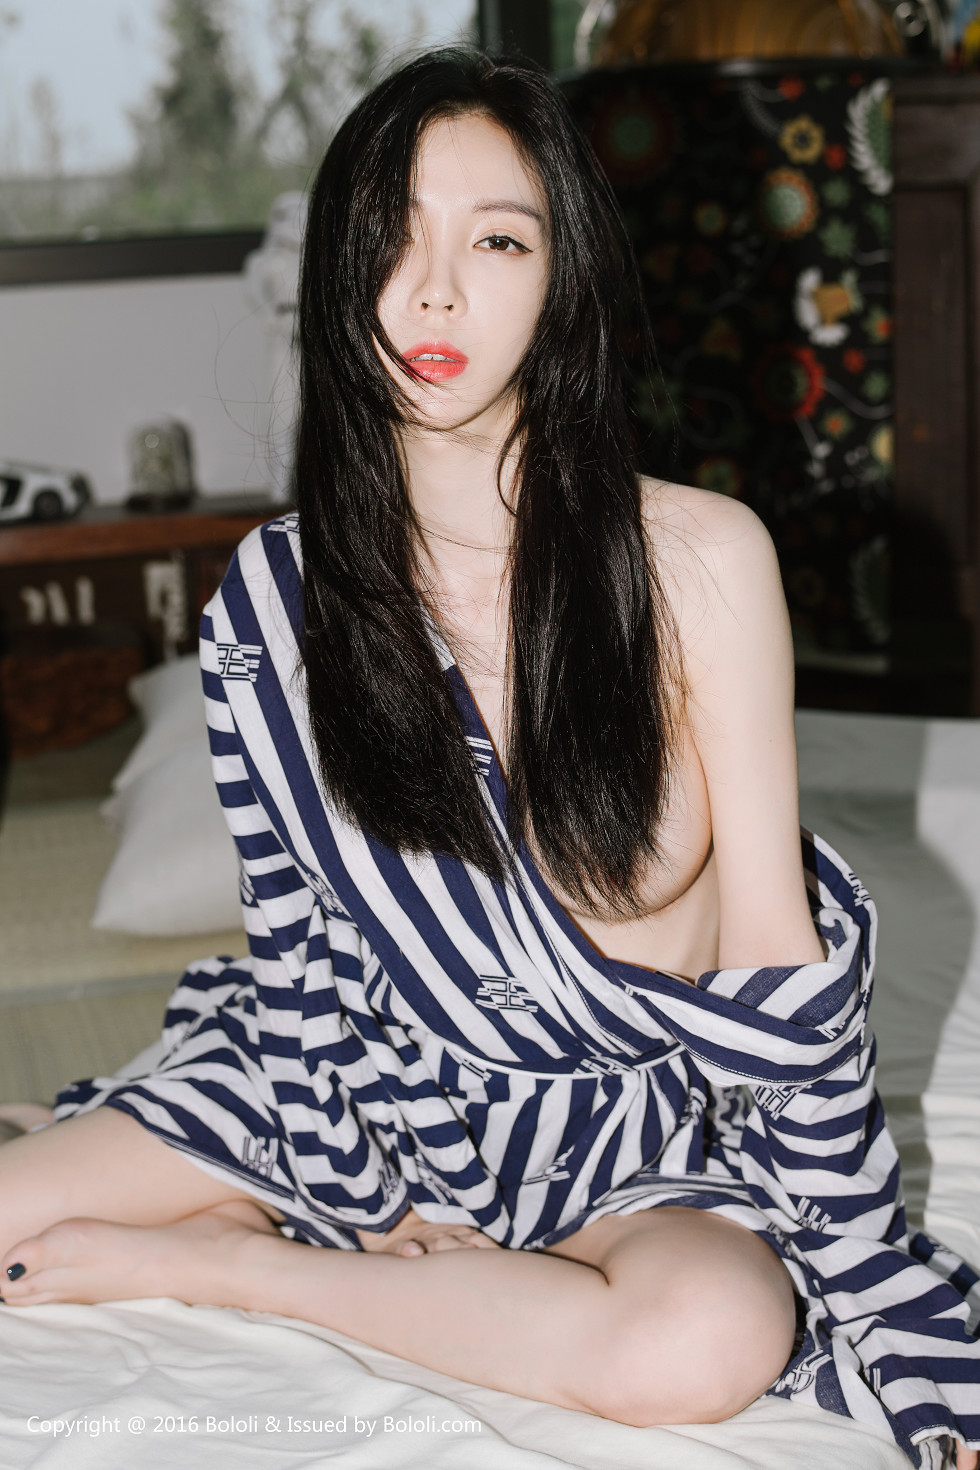 BoLoli波萝社新刊韩国嫩模BebeKim真空条纹外套加白色吊带豪乳魅惑套图写真